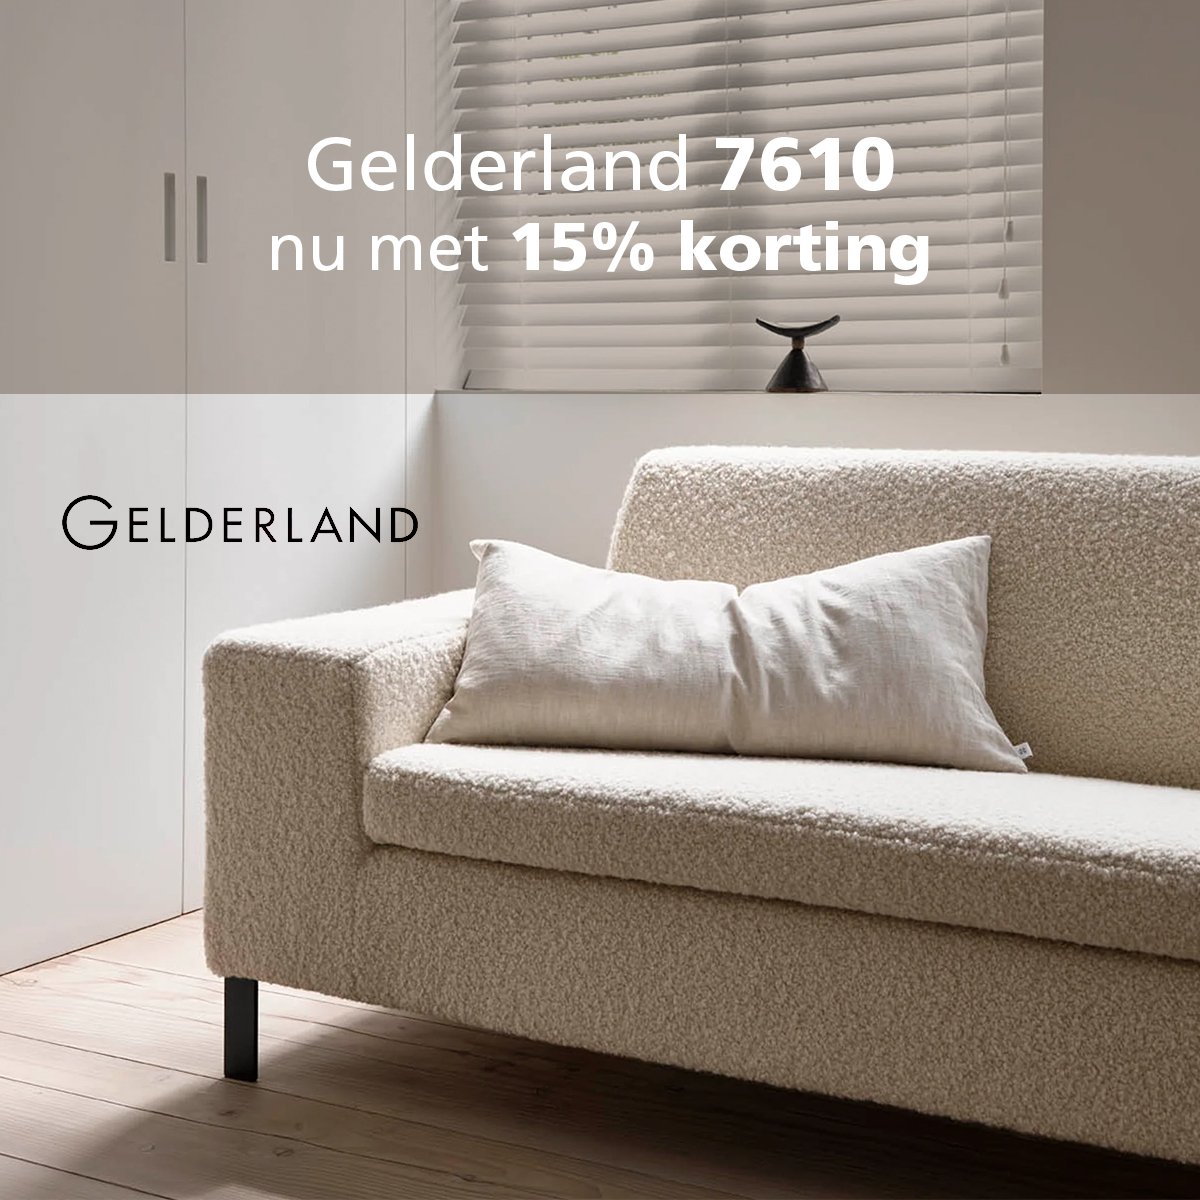 Gelderland 7610 15